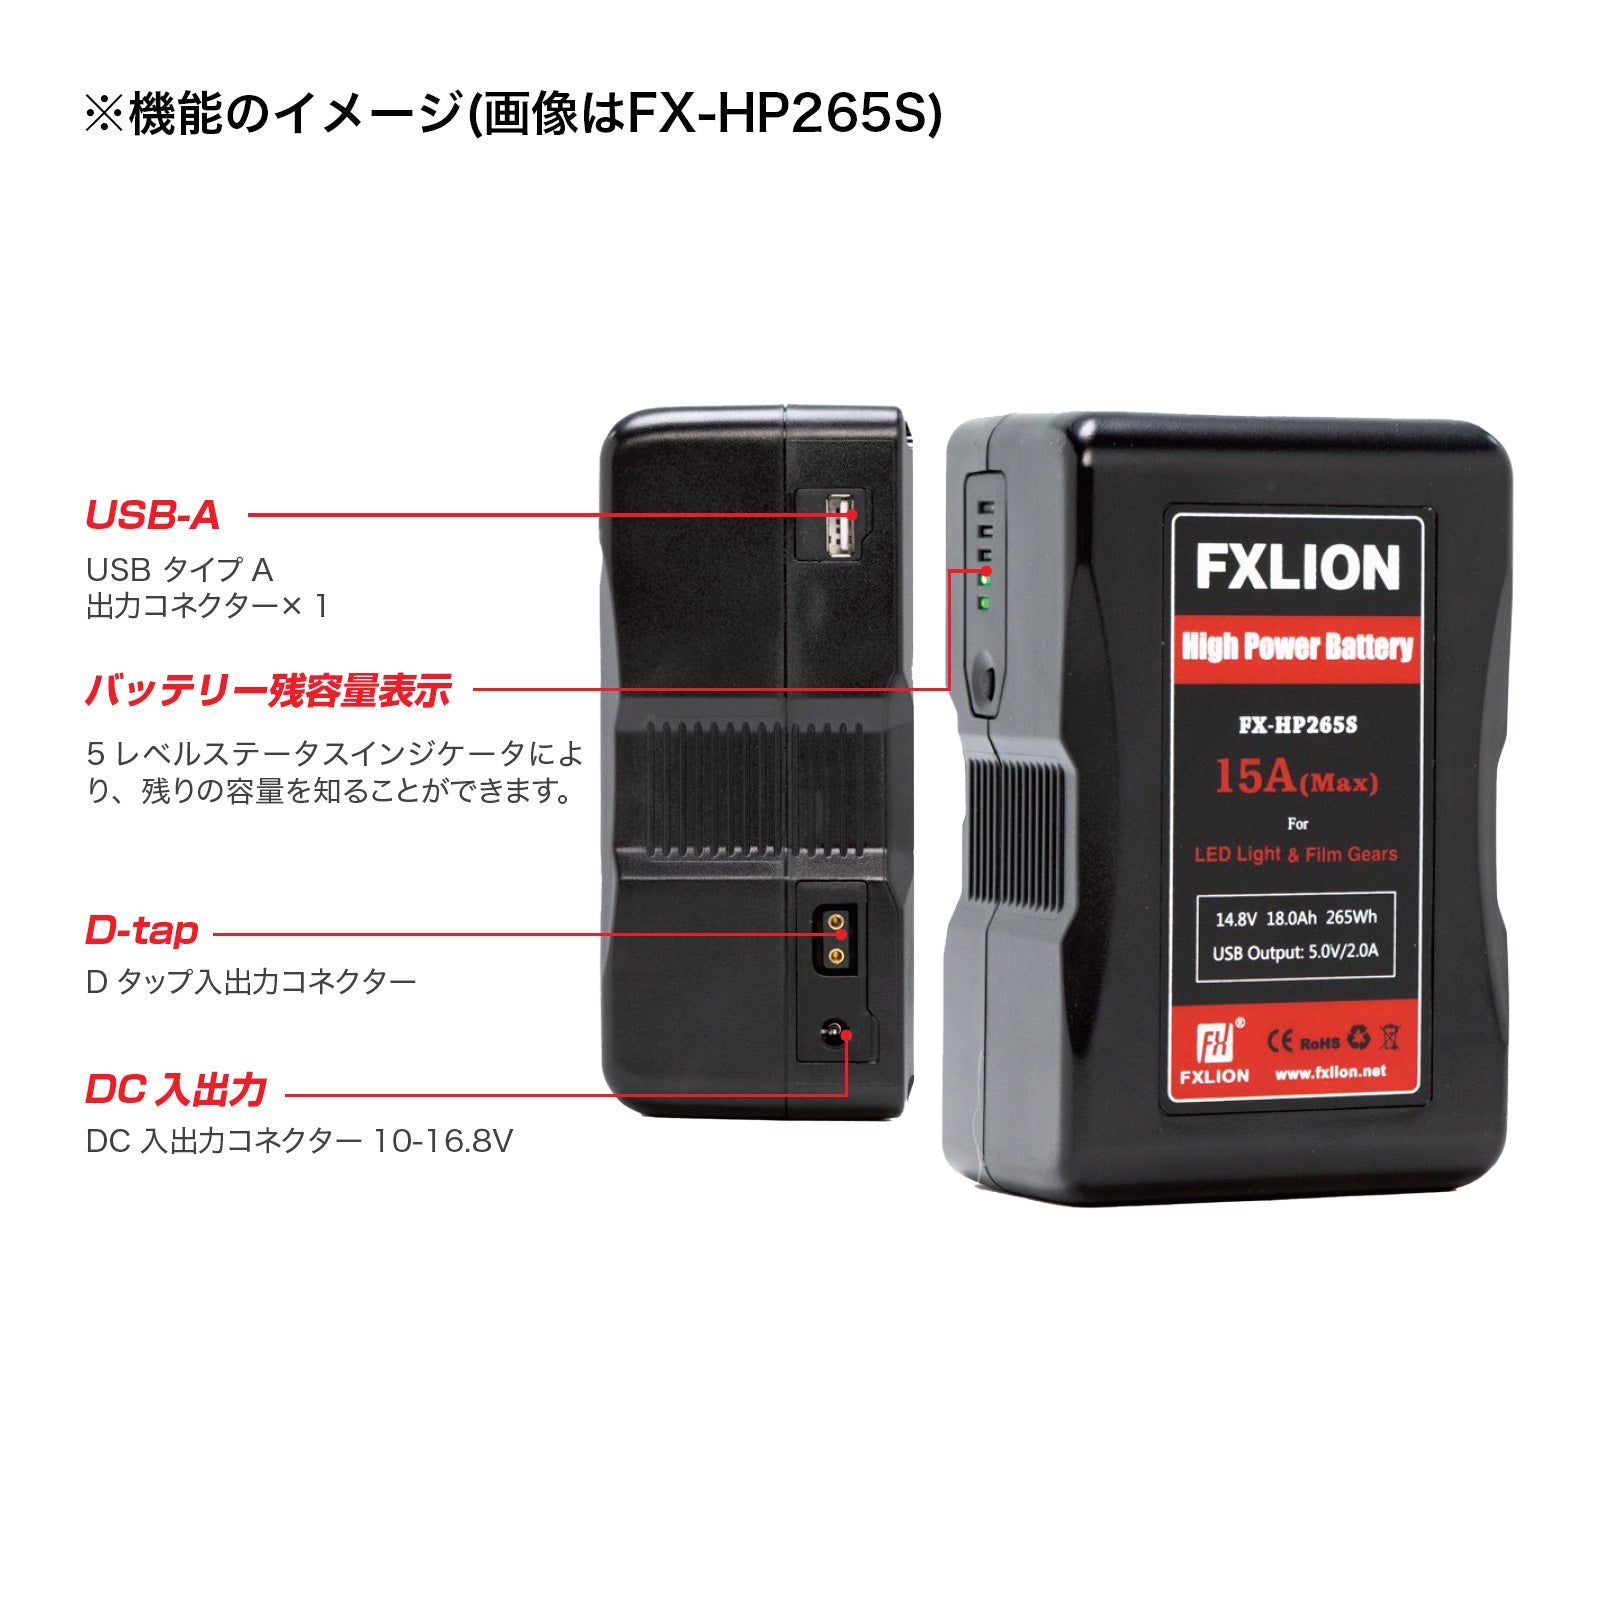 FXLION(エフエックスライオン) ゴールドマウントリチウムイオンバッテリー High Power Battery FX-HP265A [512249]